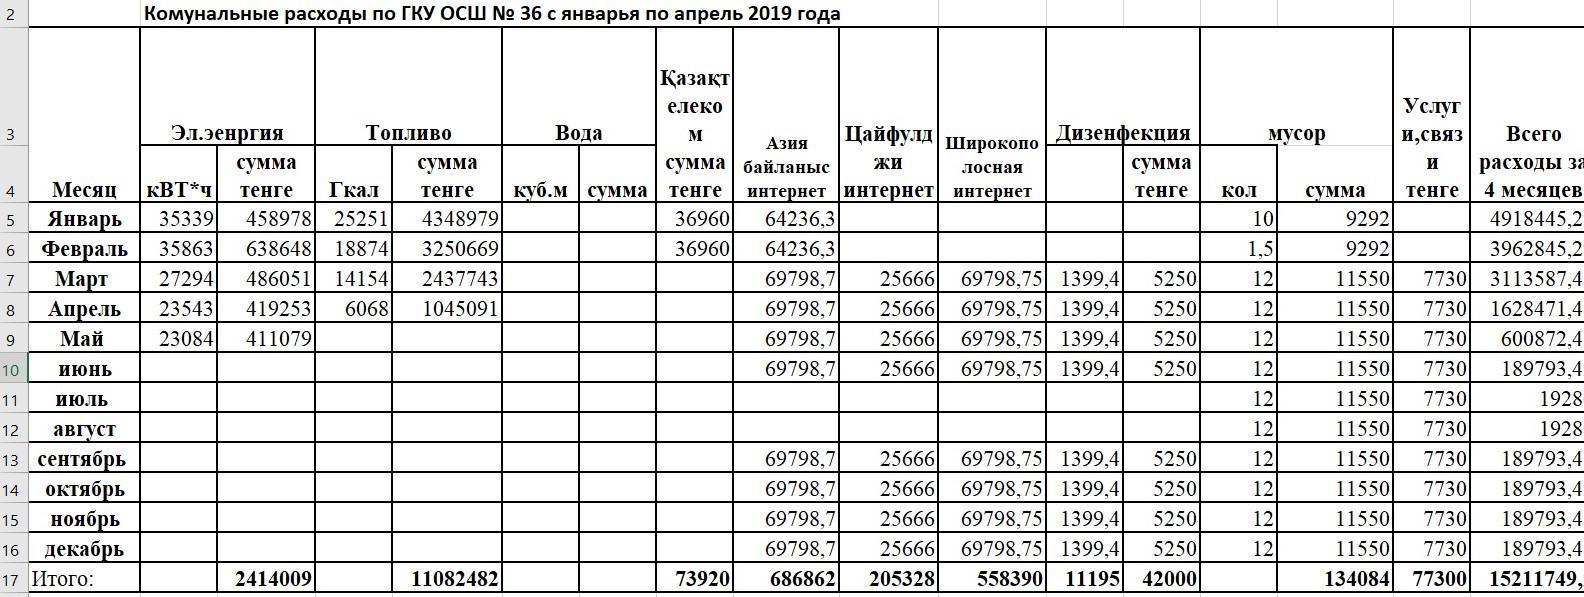 Комунальные расходы по ГКУ ОСШ №36 с Januaryя по April 2019 года